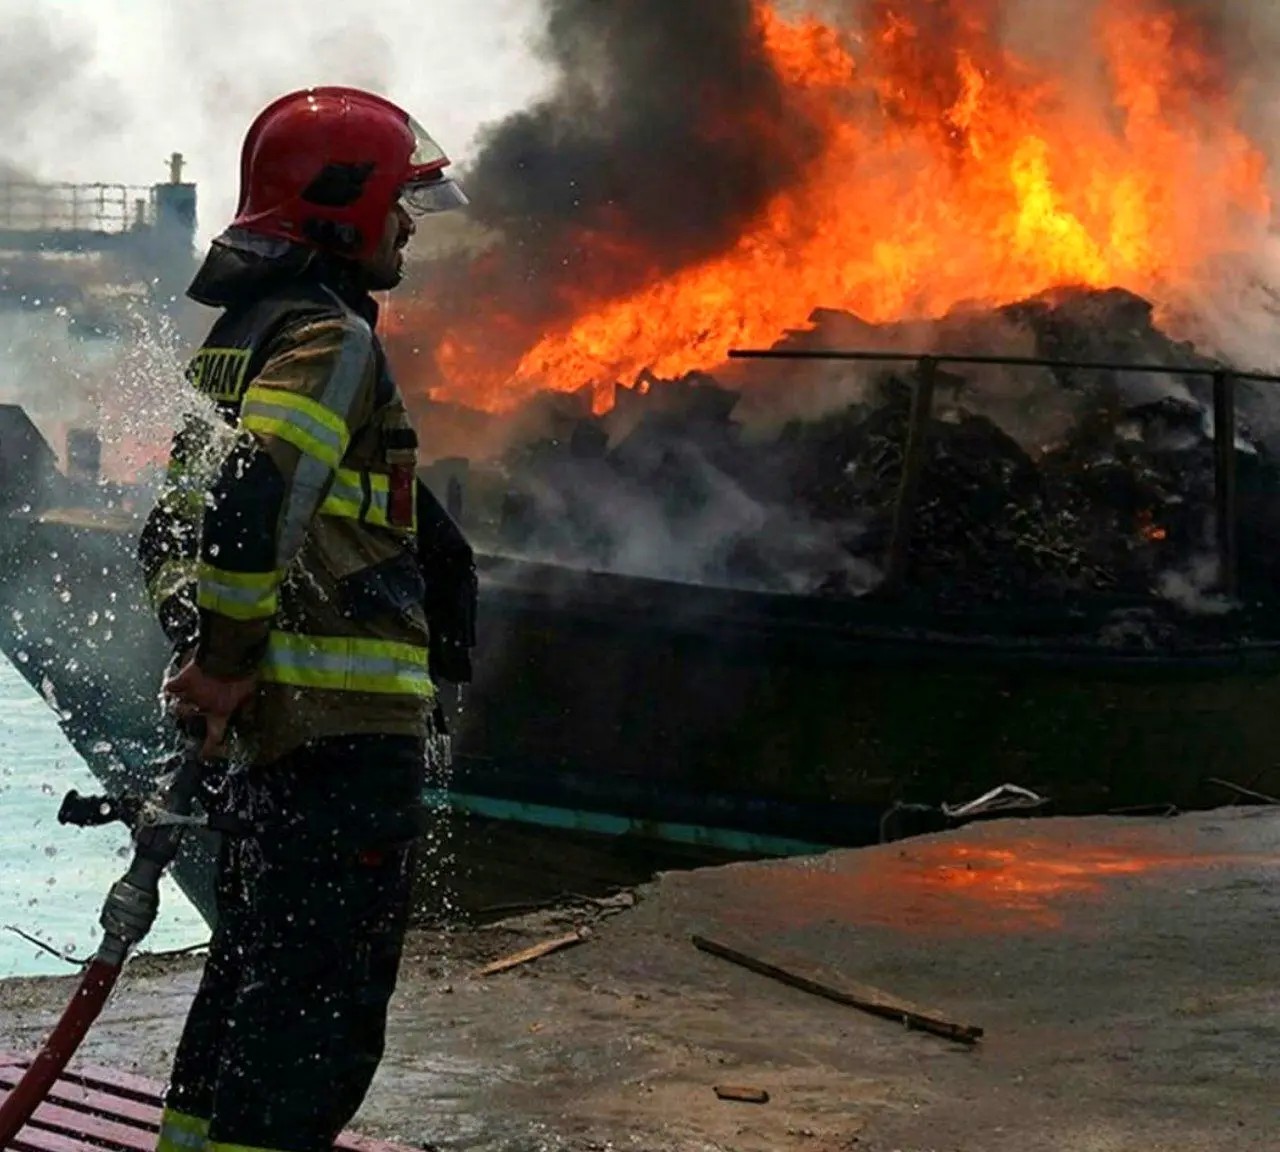 آتش سوزی سه فروند لنج باری در اسکله بهمن قشم